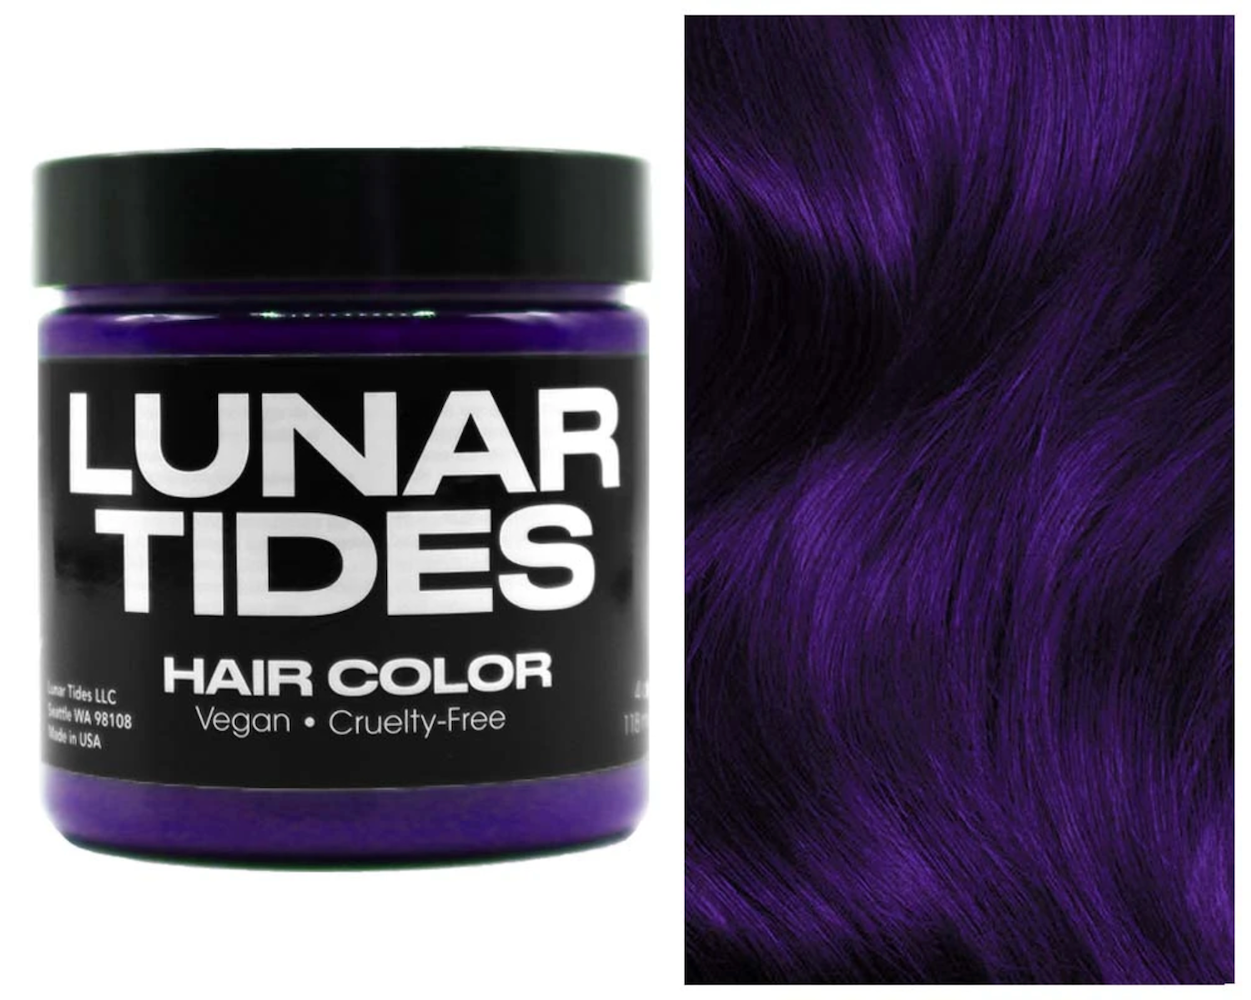 Lunar Tides Hair Dye - Nightshade